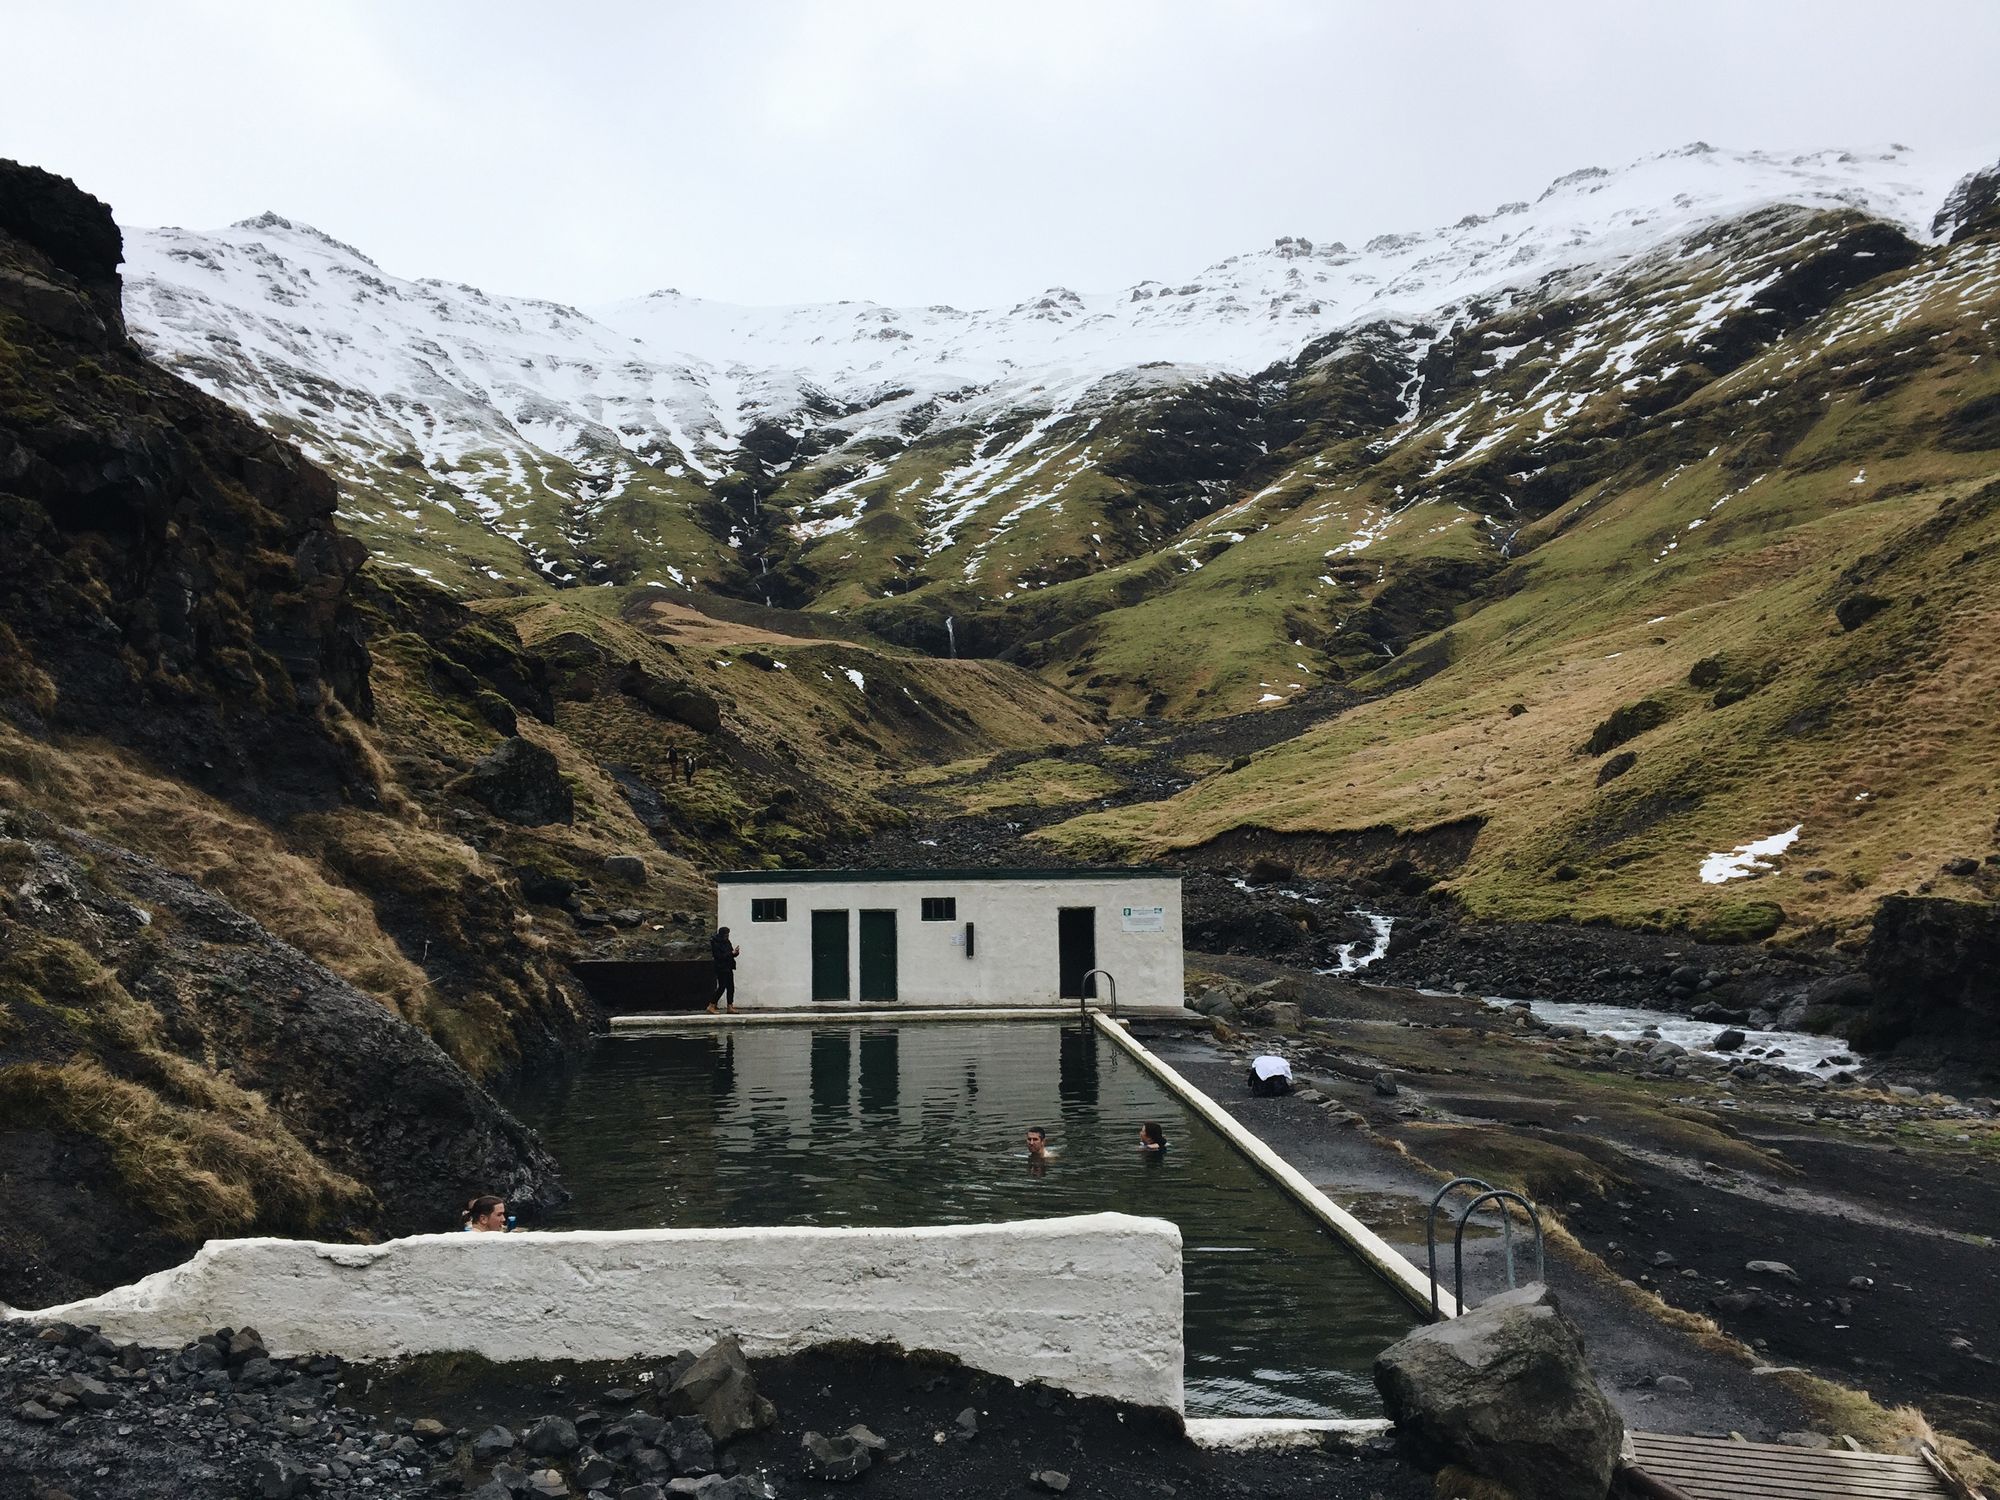 Seljavallalaug Pool in Iceland